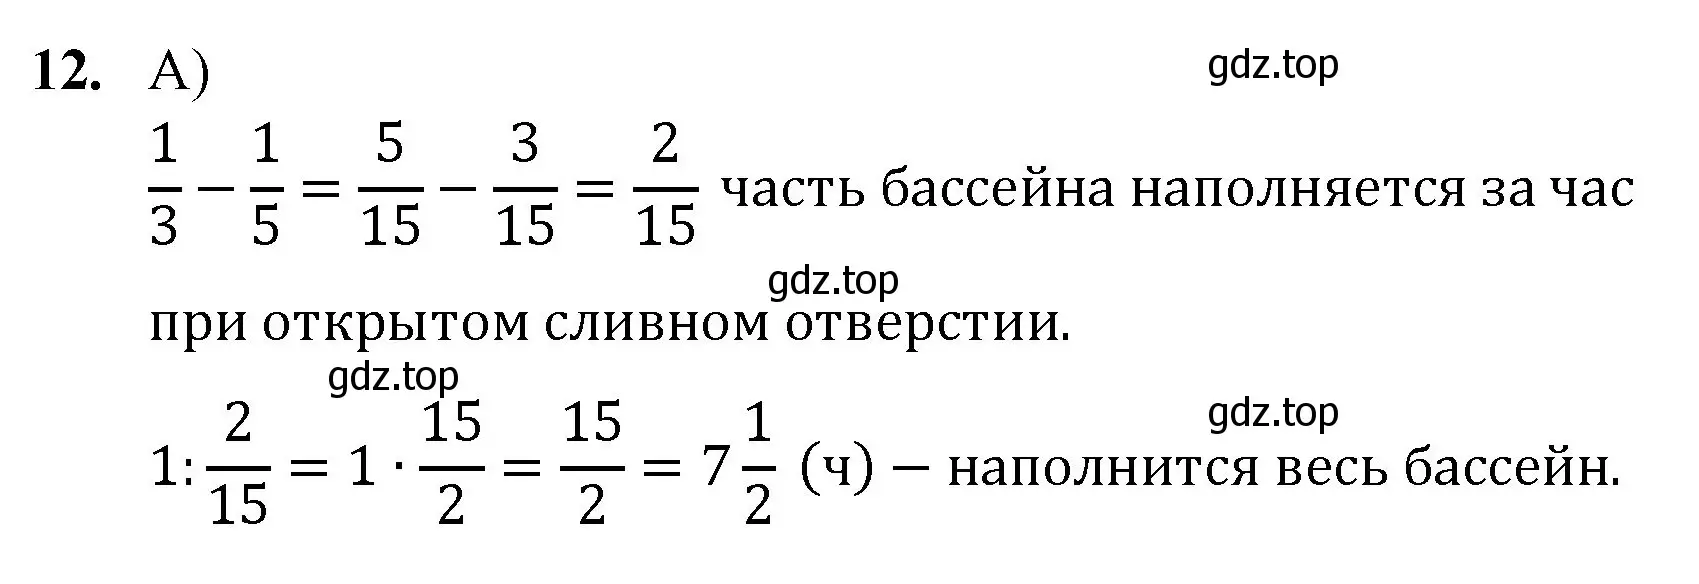 Решение номер 12 (страница 265) гдз по математике 5 класс Мерзляк, Полонский, учебник